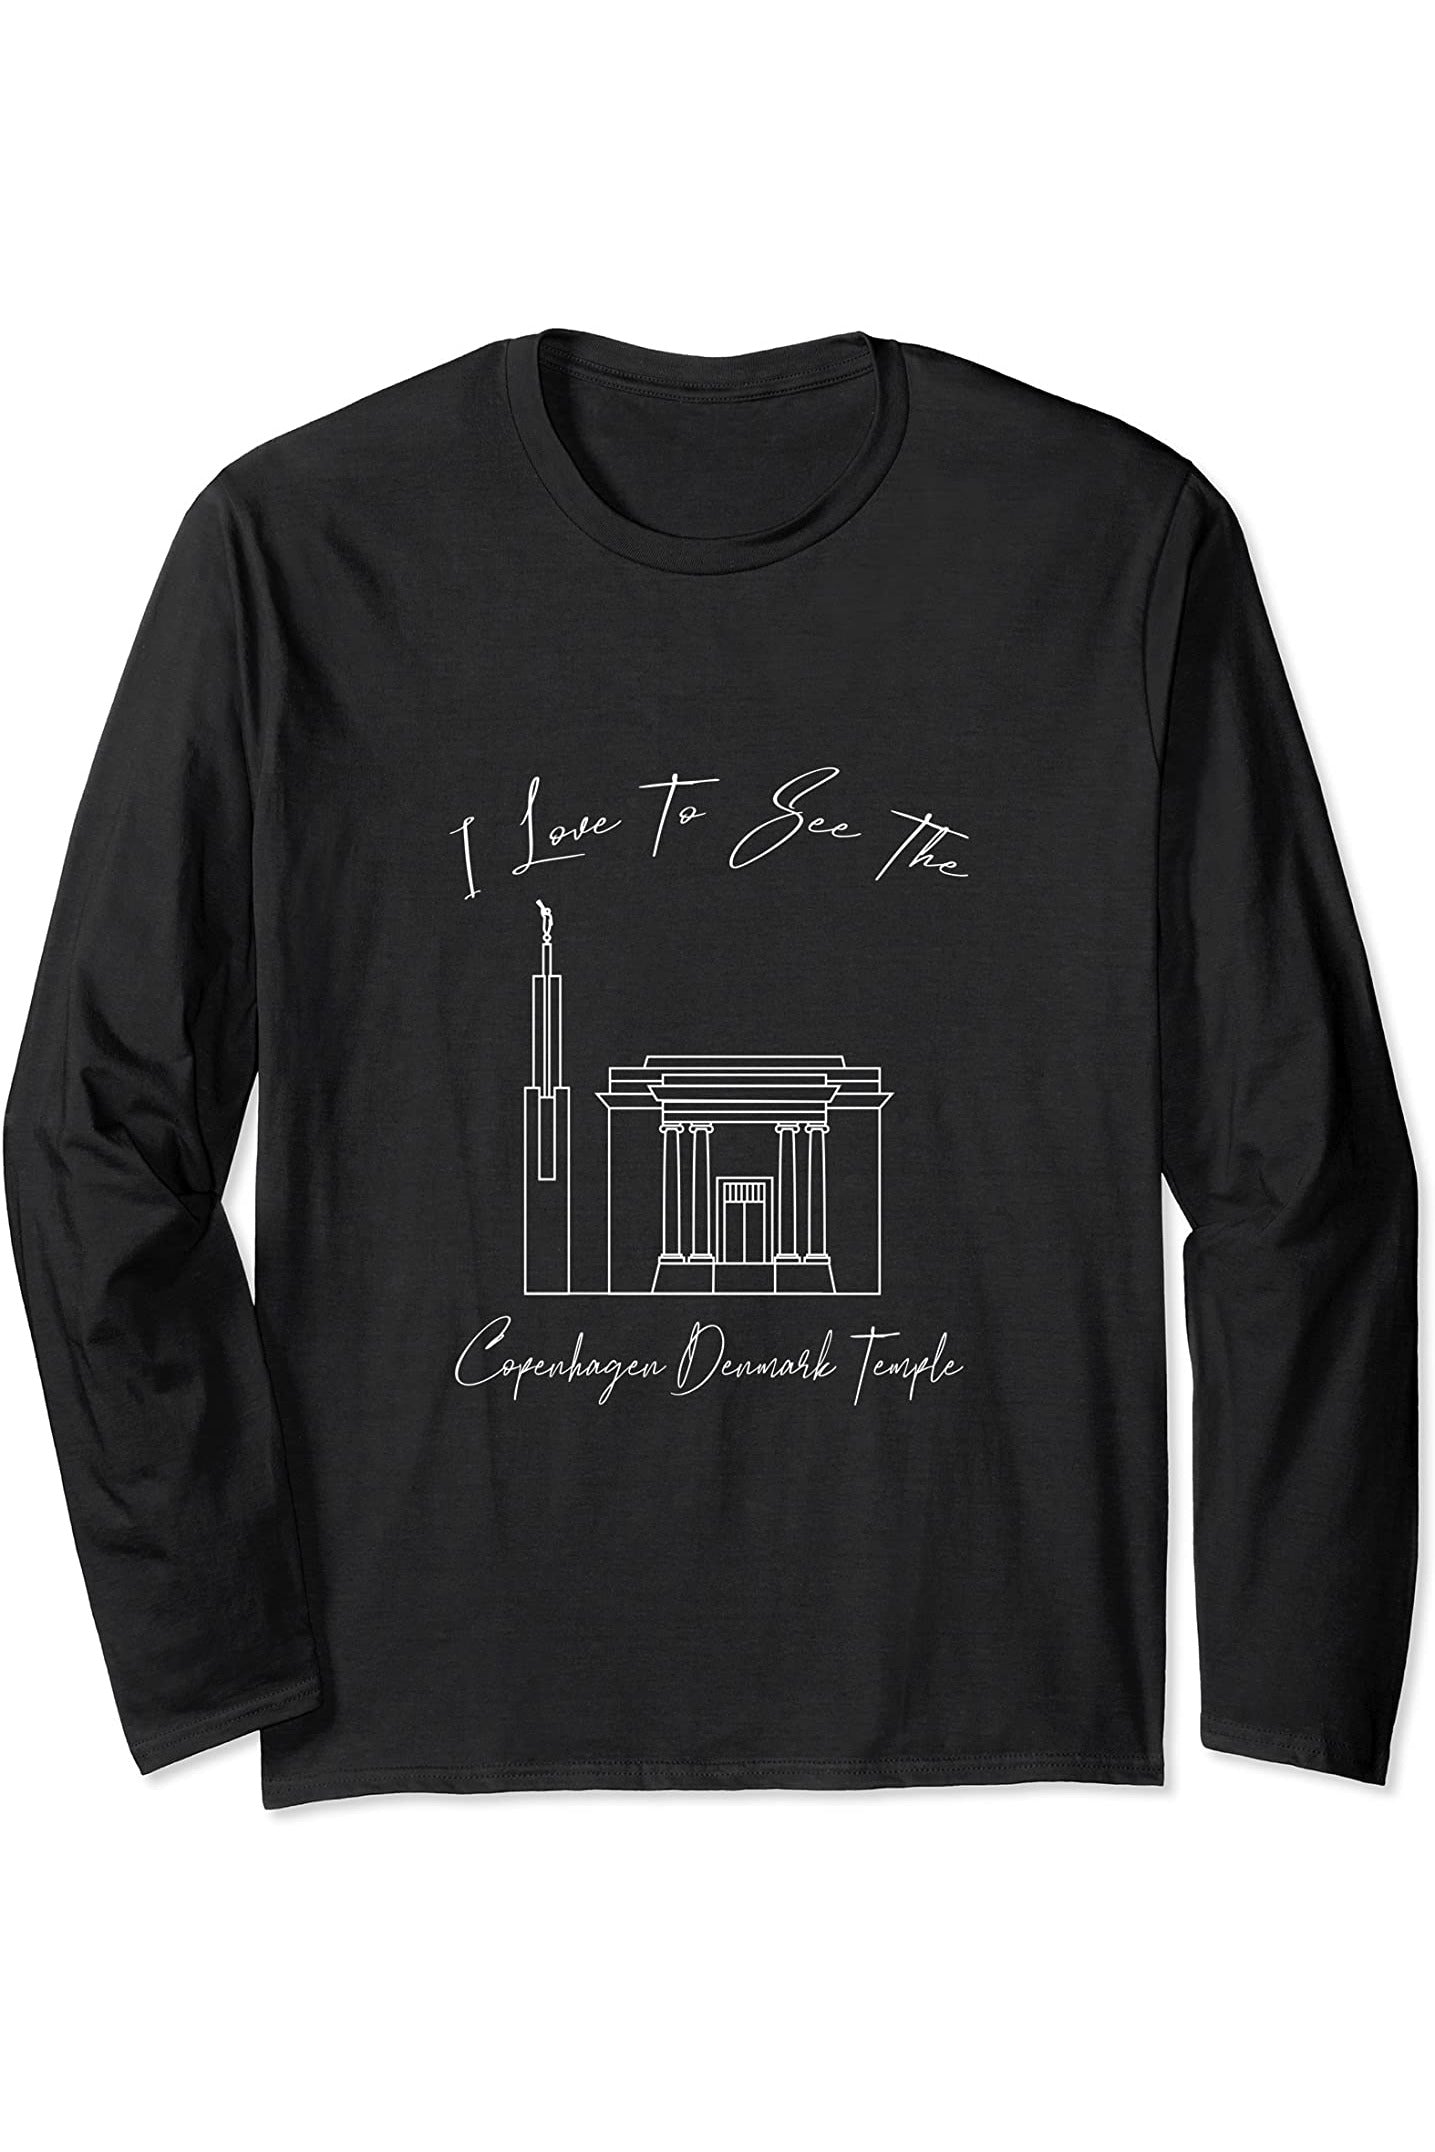 Copenaghen Danimarca Tempio, amo vedere il mio tempio Long Sleeve T-Shirt